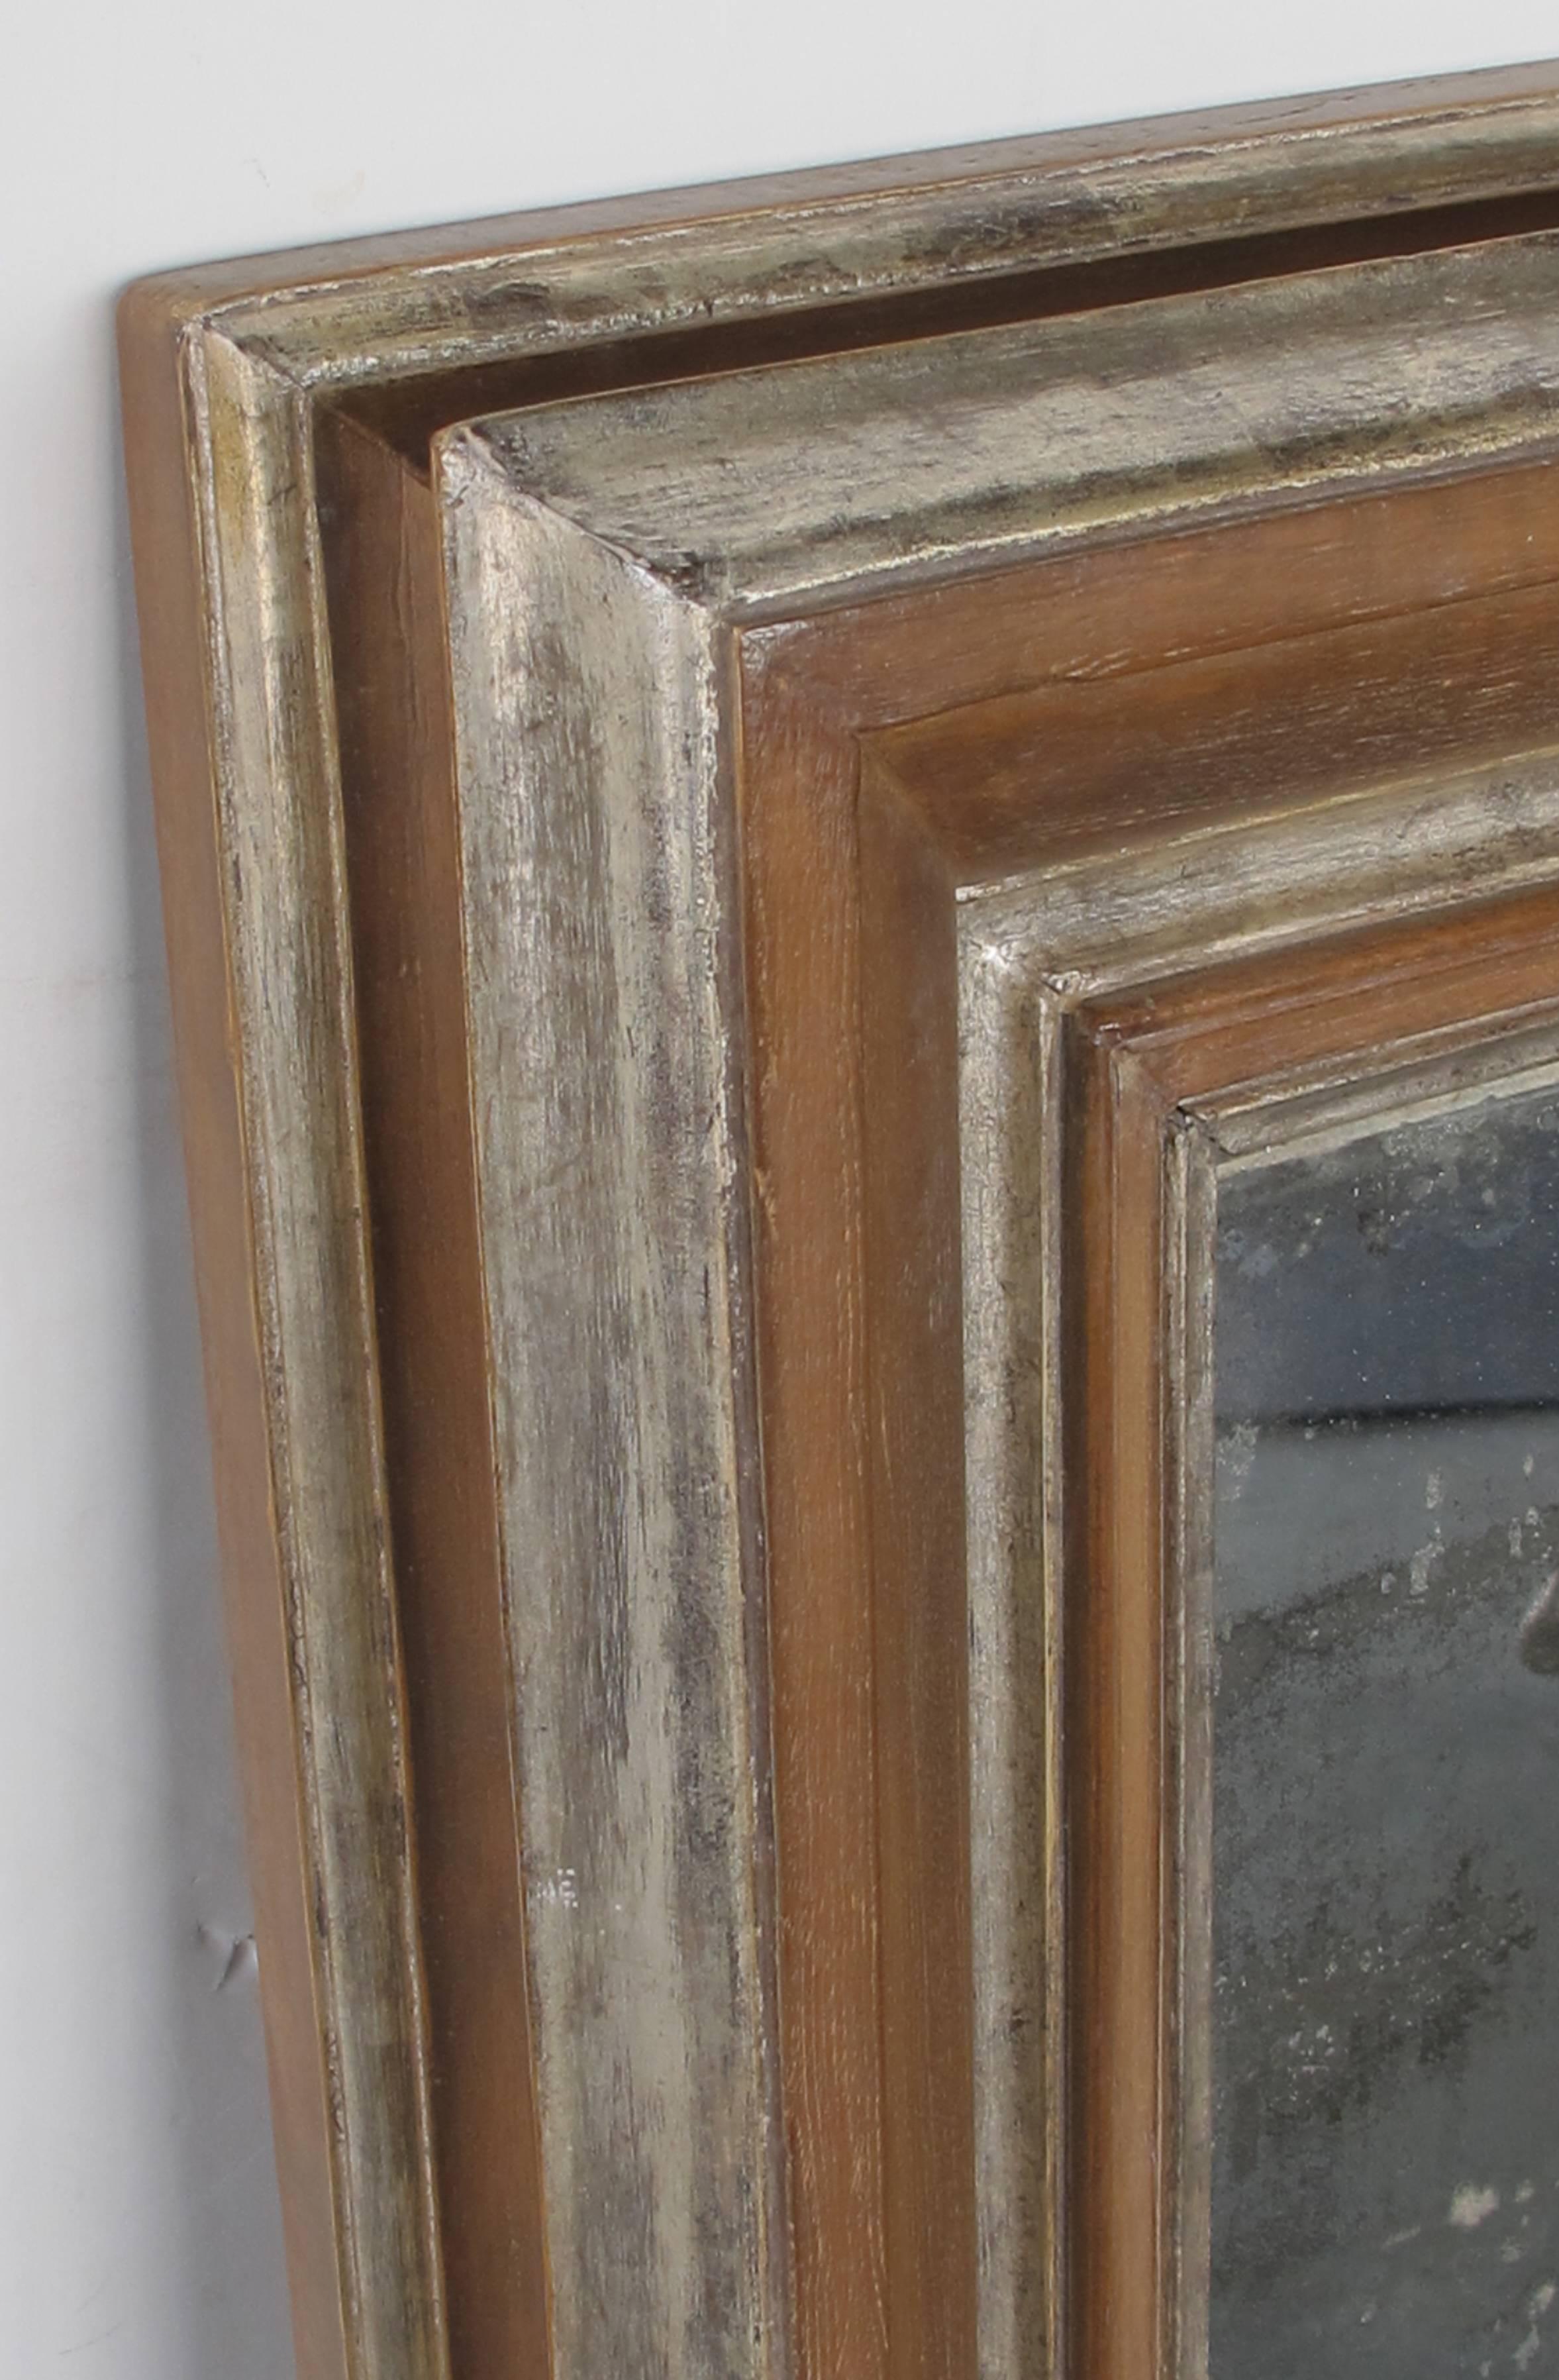 Der dicke und robuste Buchenholzrahmen mit silber-vergoldeten Akzenten umgibt die originale, antikisierte Spiegelplatte.